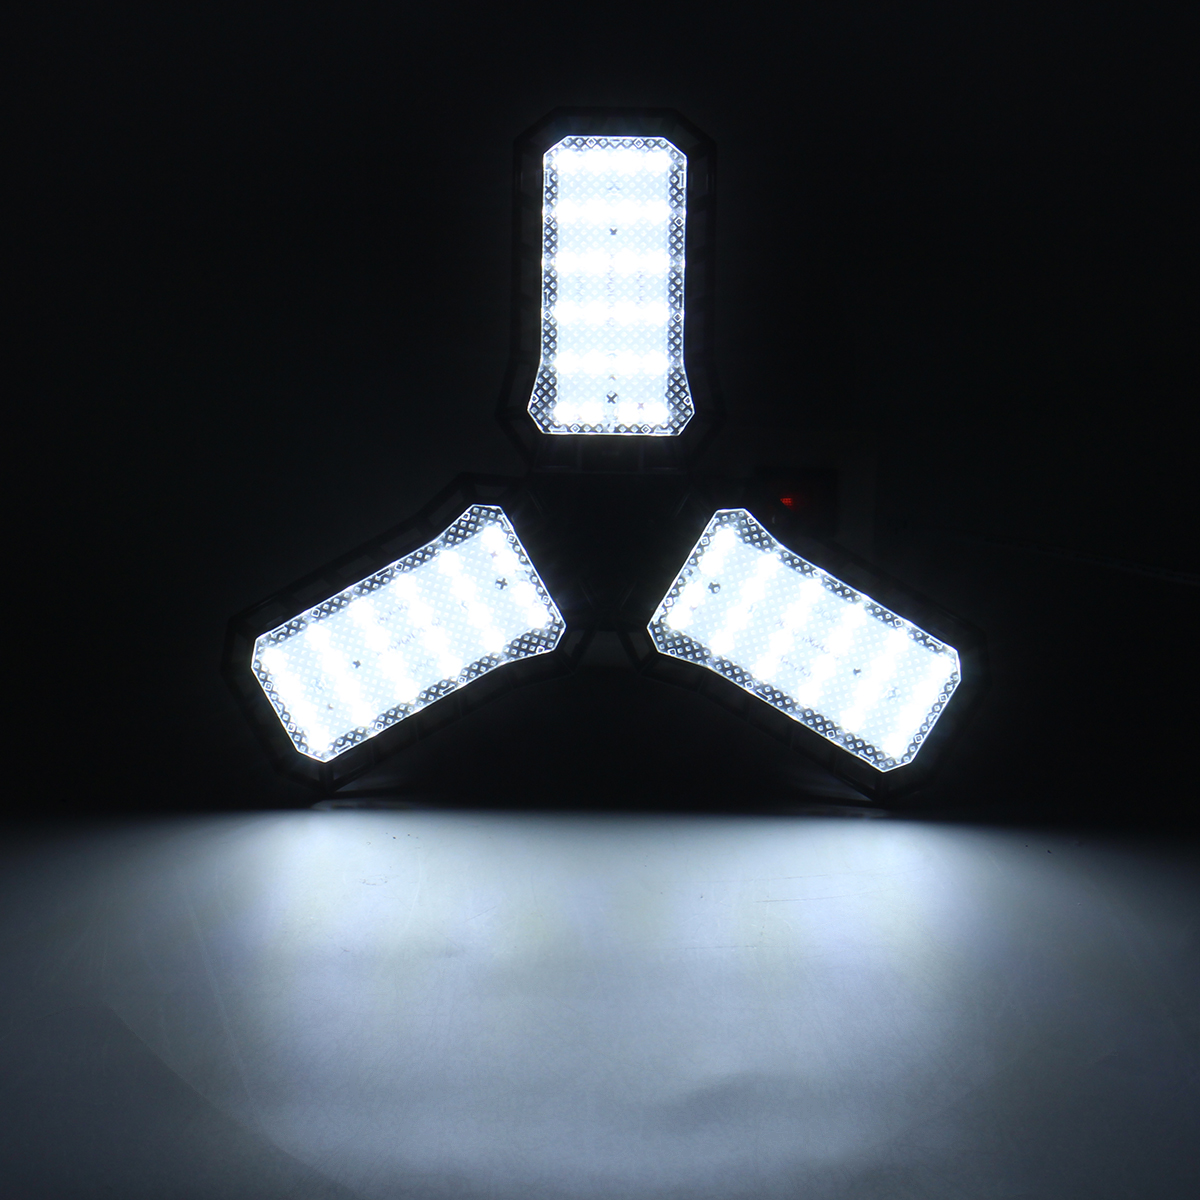 LED-Three-Leaf-Four-Leaf-Garage-Light-Folding-Light-Ceiling-Light-AC85-265V-6000-6500K-1860840-7